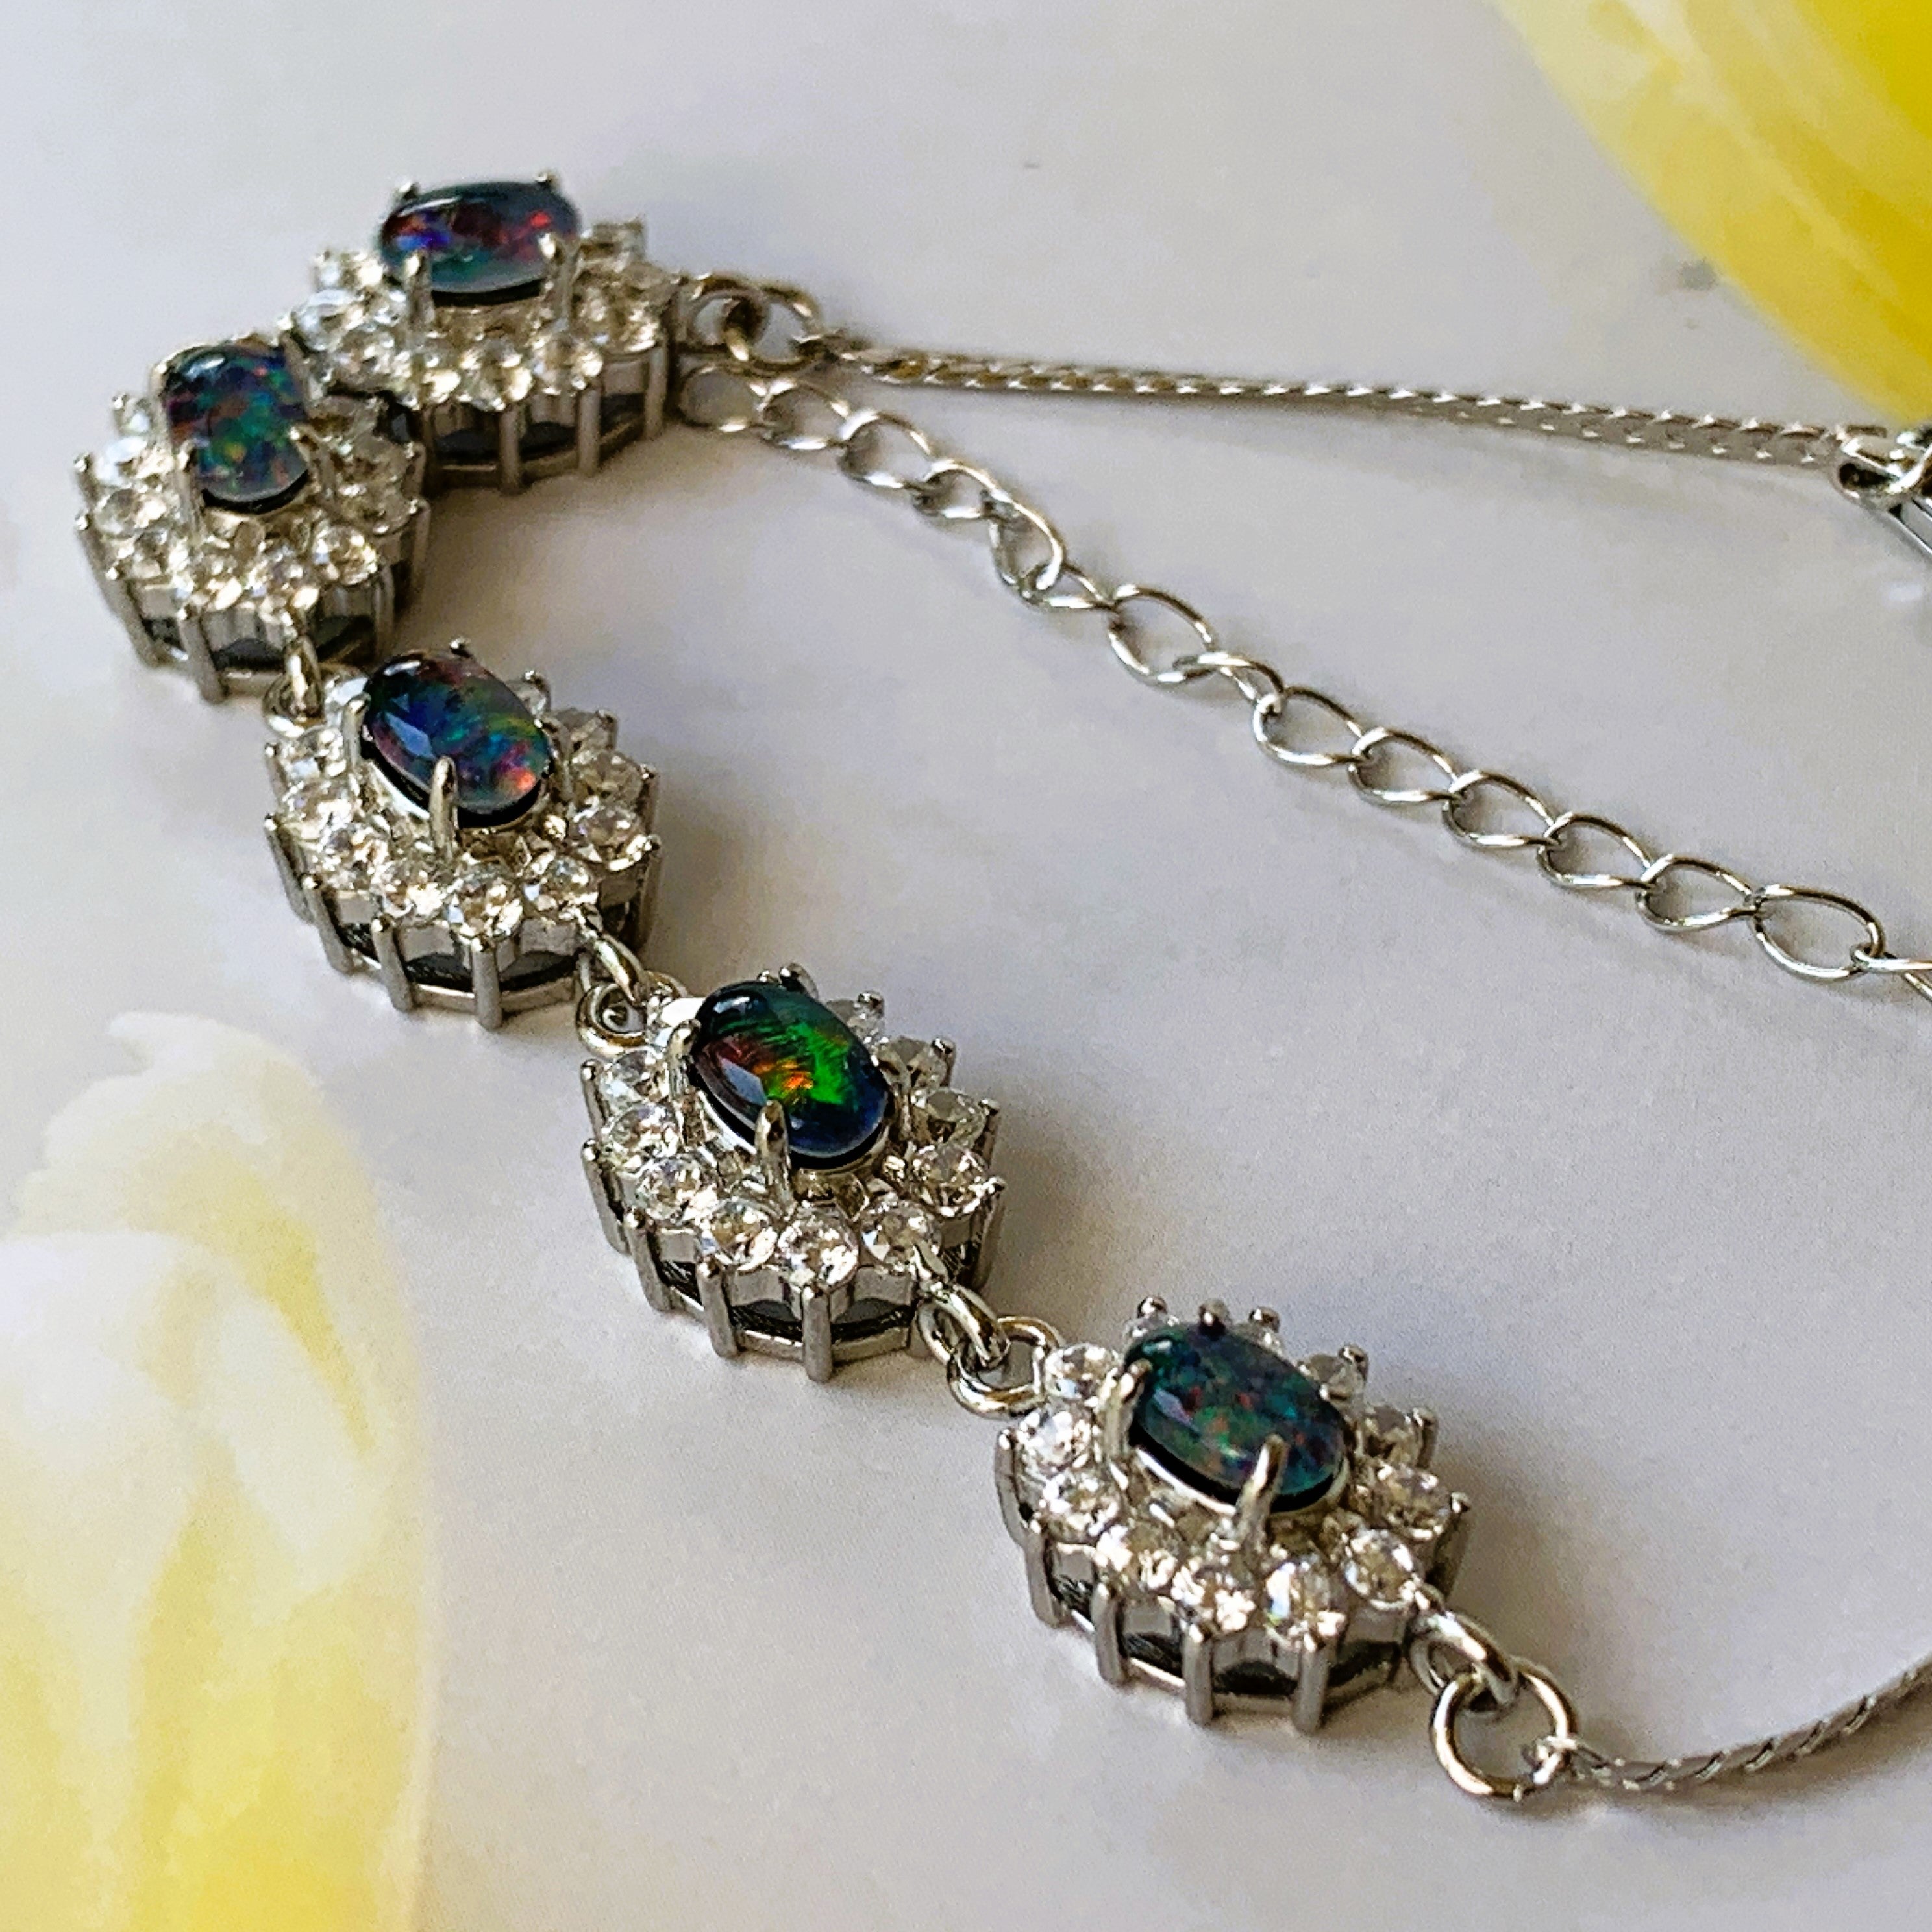 Australian Triplet Opals surrounded by cubic zirconia bracelet set in Sterling Silver - Masterpiece Jewellery Opal & Gems Sydney Australia | Online Shop